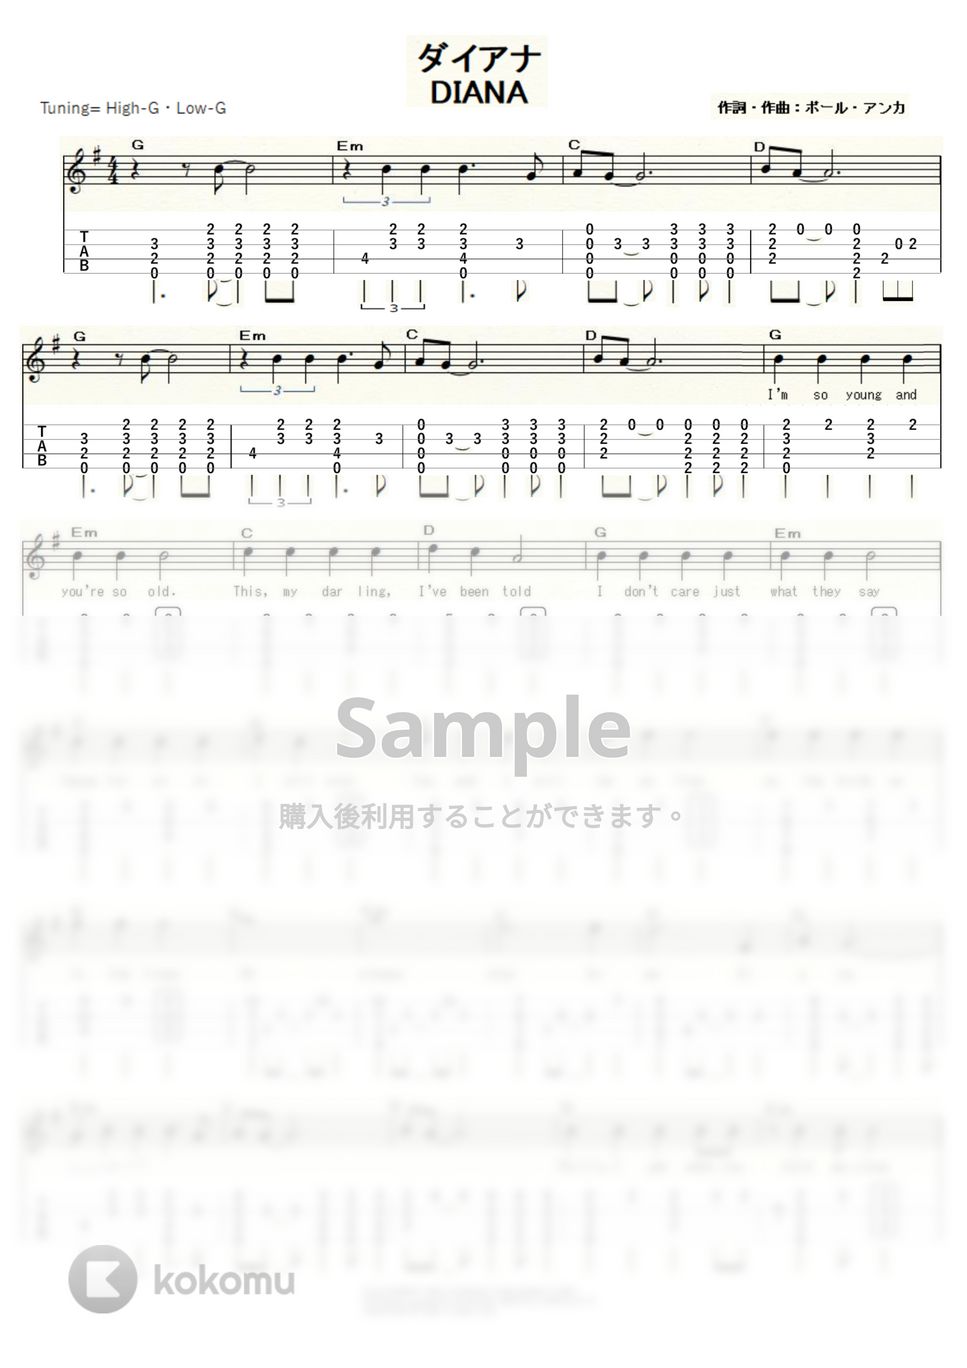 ポール・アンカ - DIANA (ｳｸﾚﾚｿﾛ/High-G・Low-G/中級) by ukulelepapa